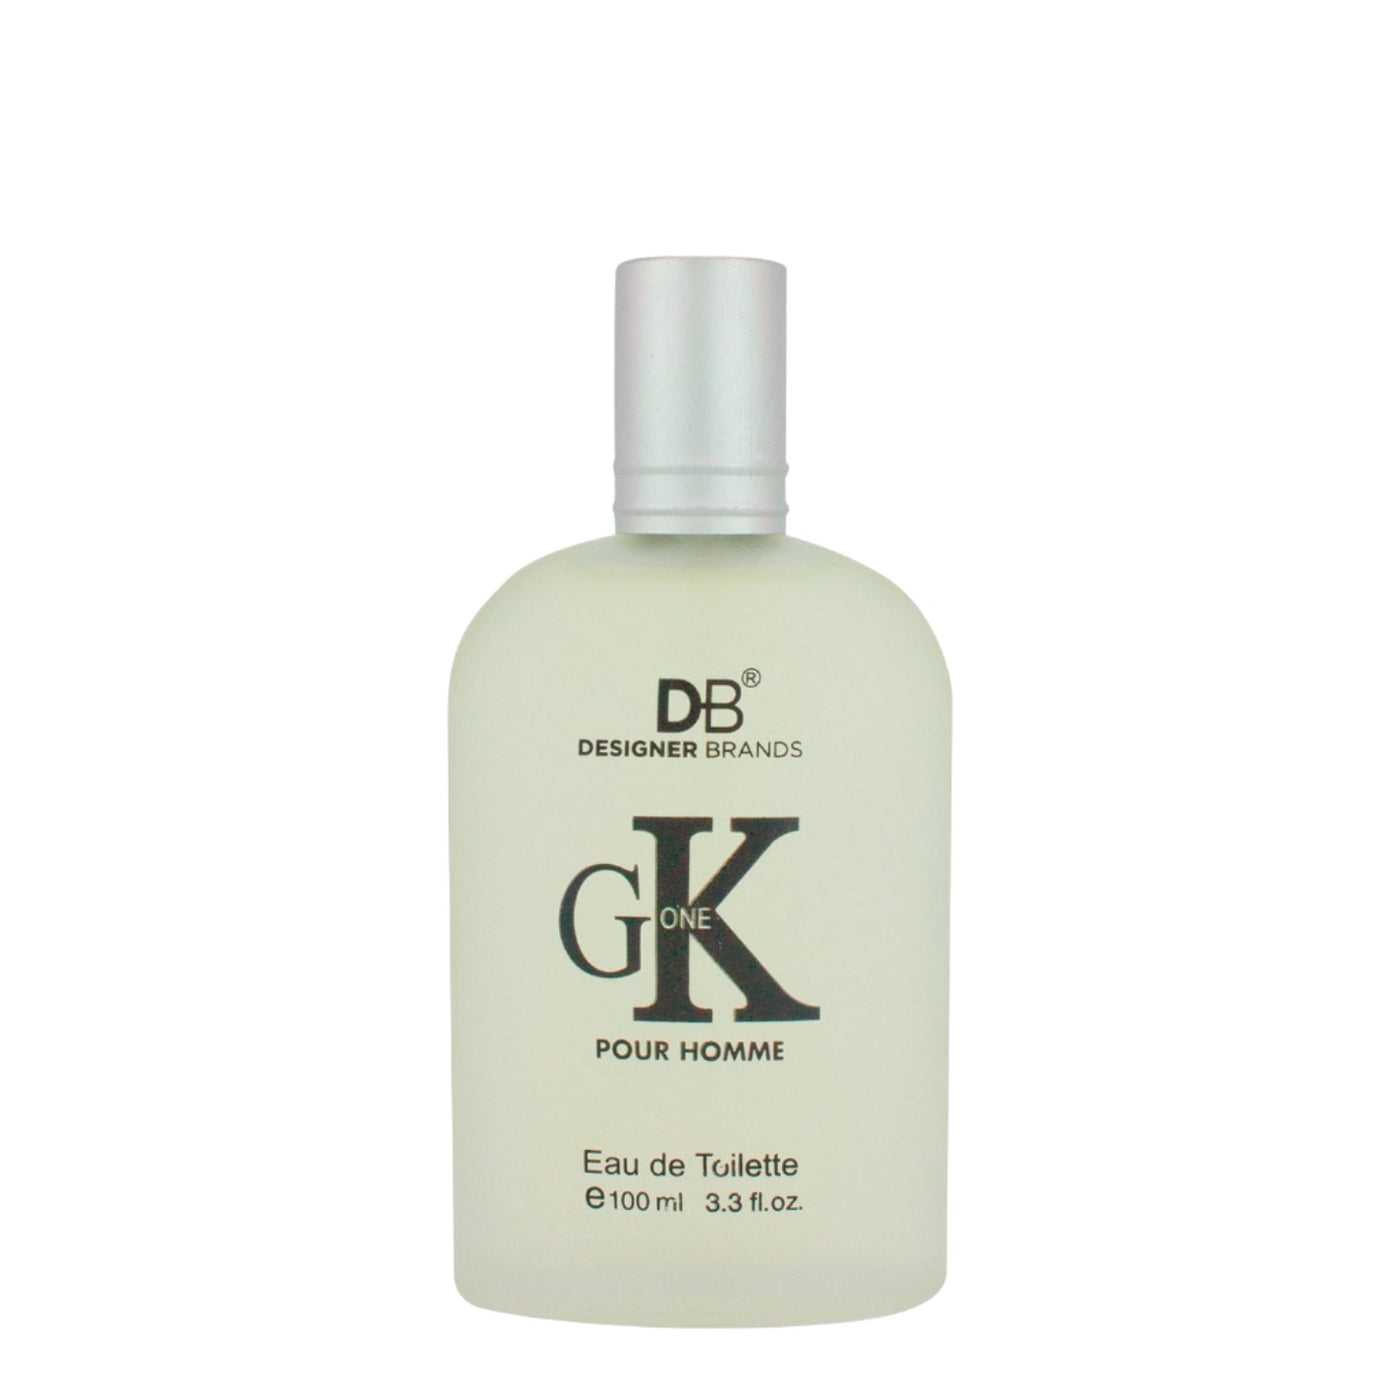 DB GK One for Men (EDT) 100ml Fragrance